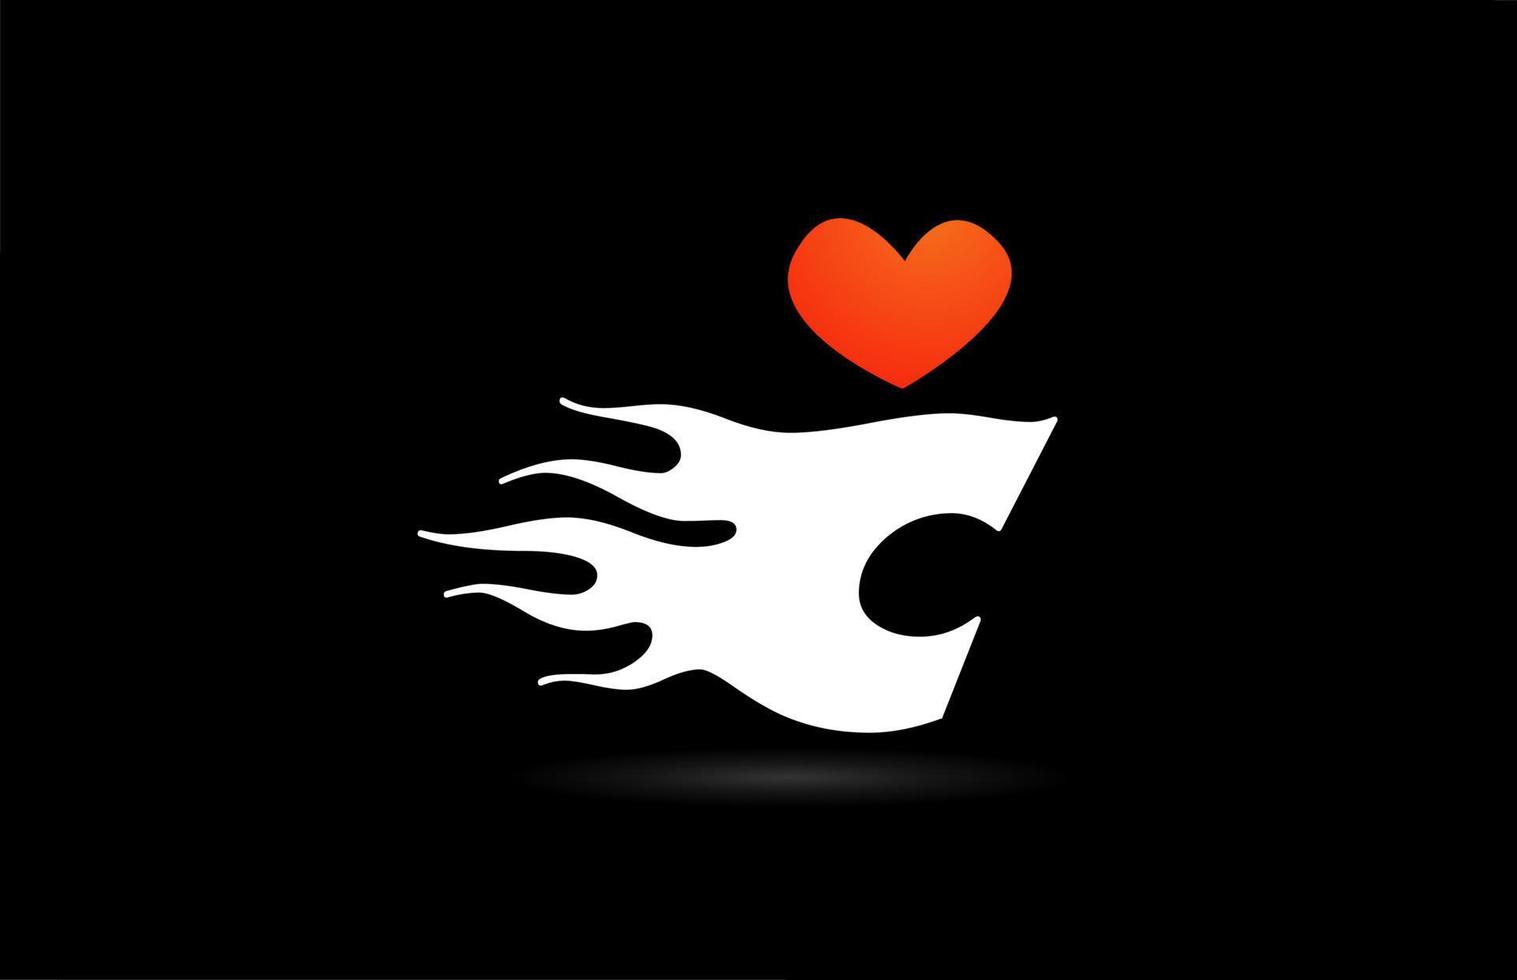 création de logo d'icône de lettre alphabet c. modèle créatif pour les entreprises avec des flammes de coeur d'amour vecteur